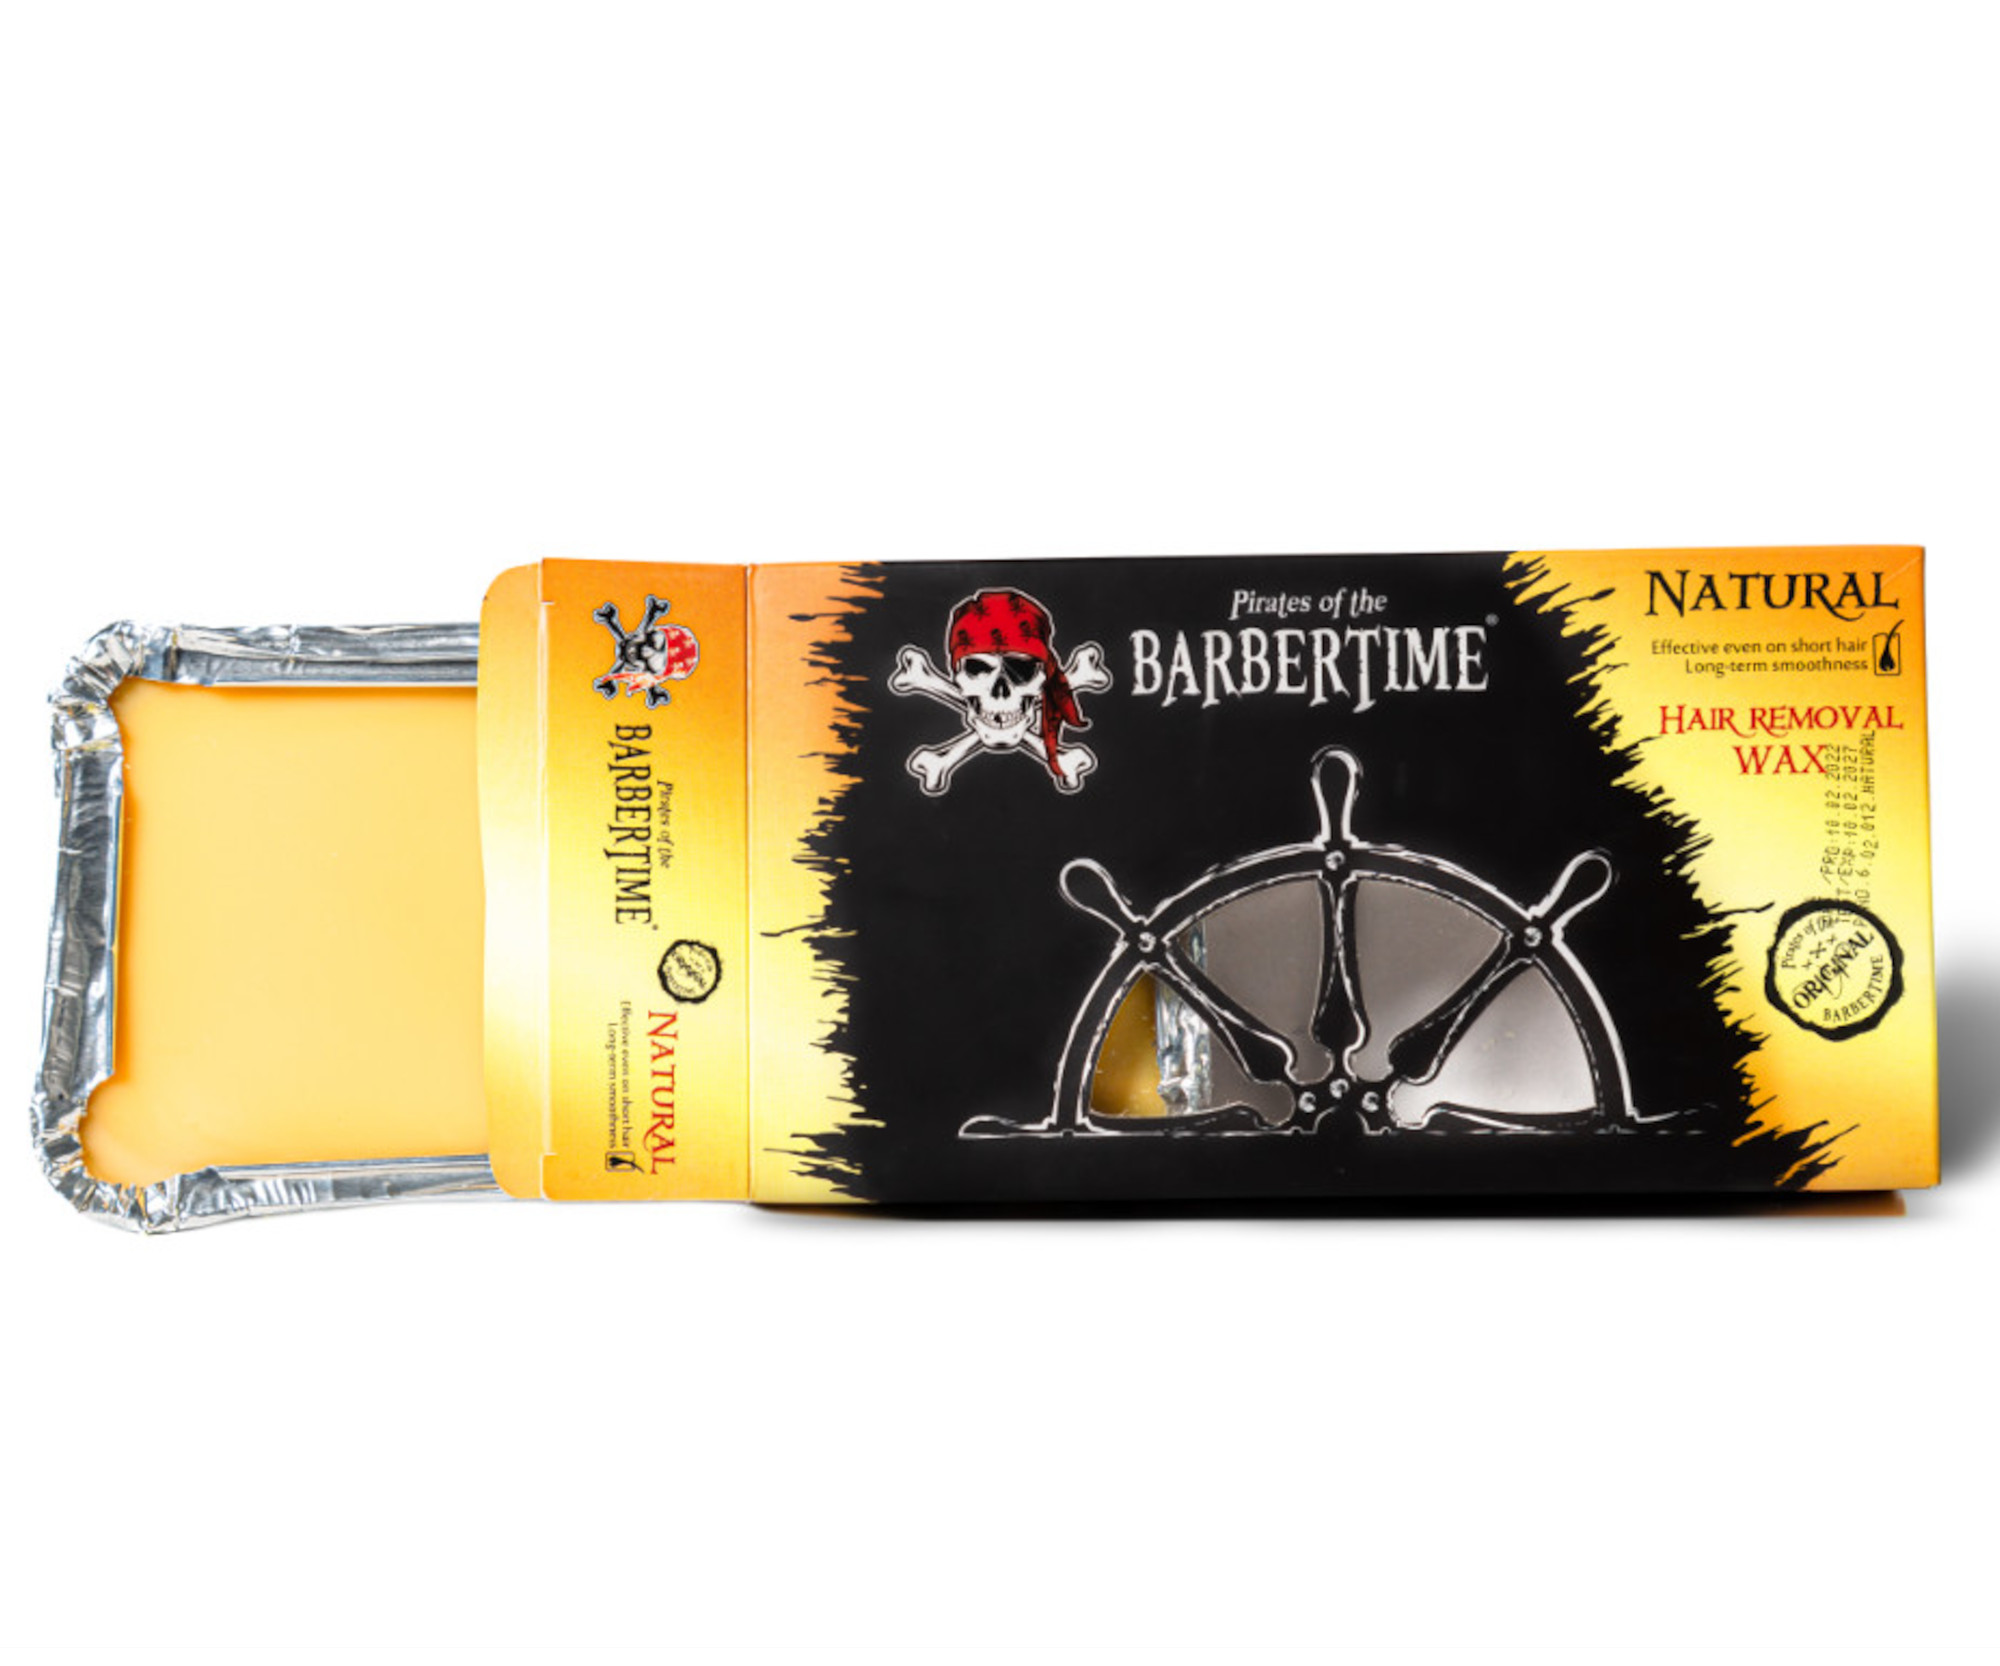 Depilační vosk Pirates of the Barbertime Hard Removal Wax Natural - žlutý, 500 g + dárek zdarma